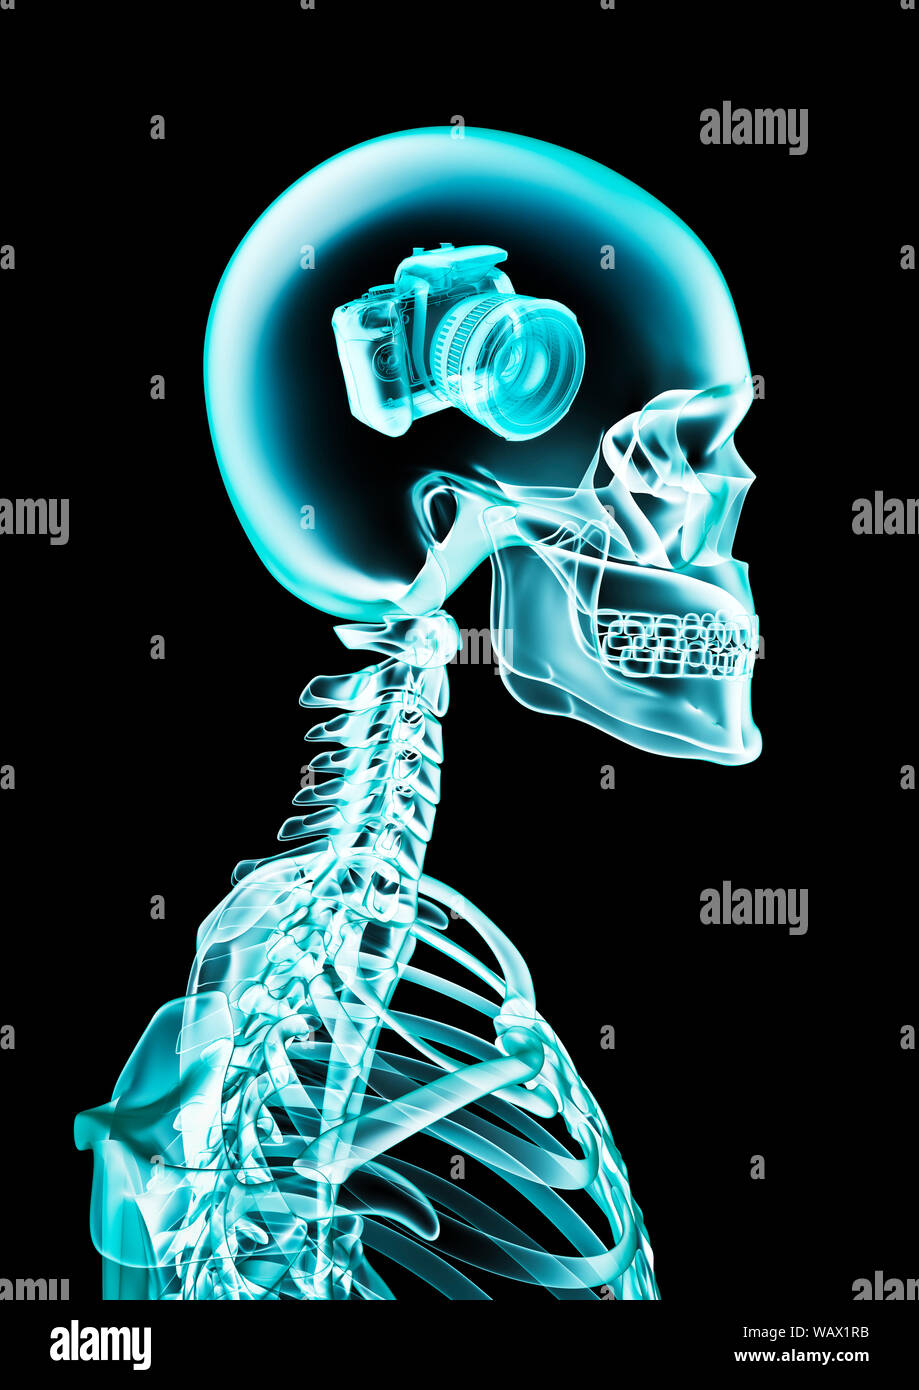 X-ray memoria fotografica / 3D illustrazione di scheletro umano x-ray mostra una fotocamera digitale all'interno della testata Foto Stock